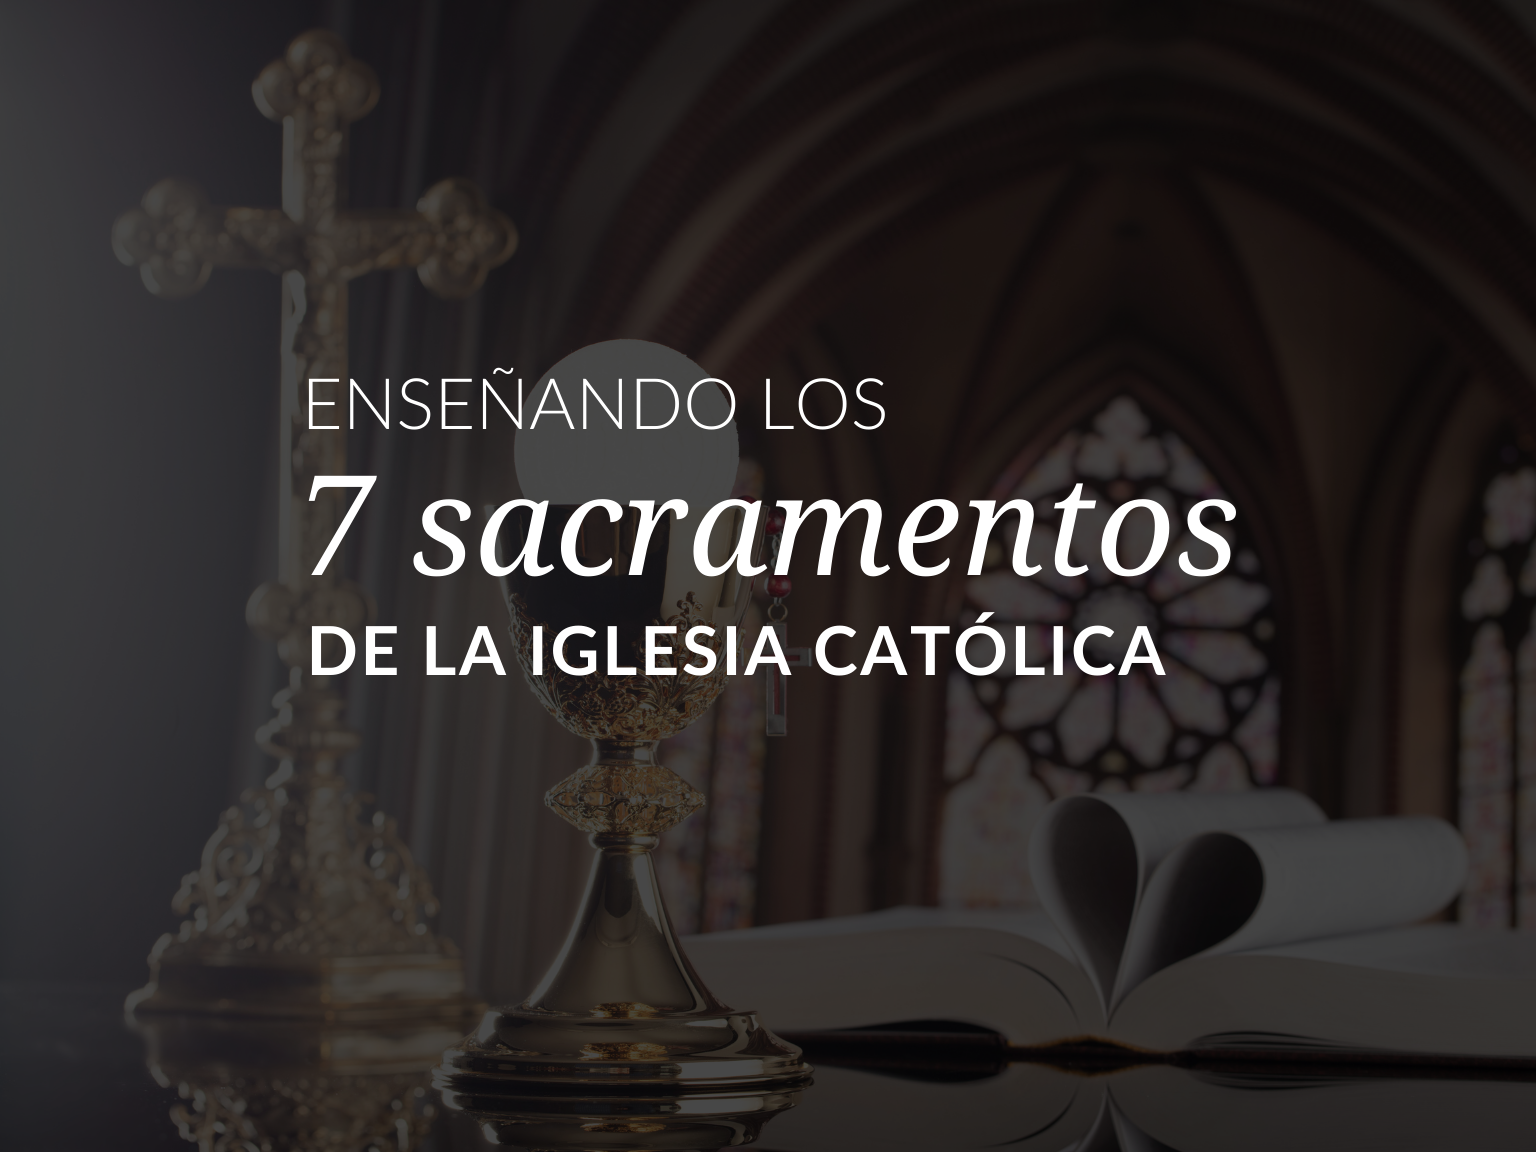 Especialidad Botánica heredar Los 7 Sacramentos de la Iglesia catolica | Los 7 sacramentos en orden